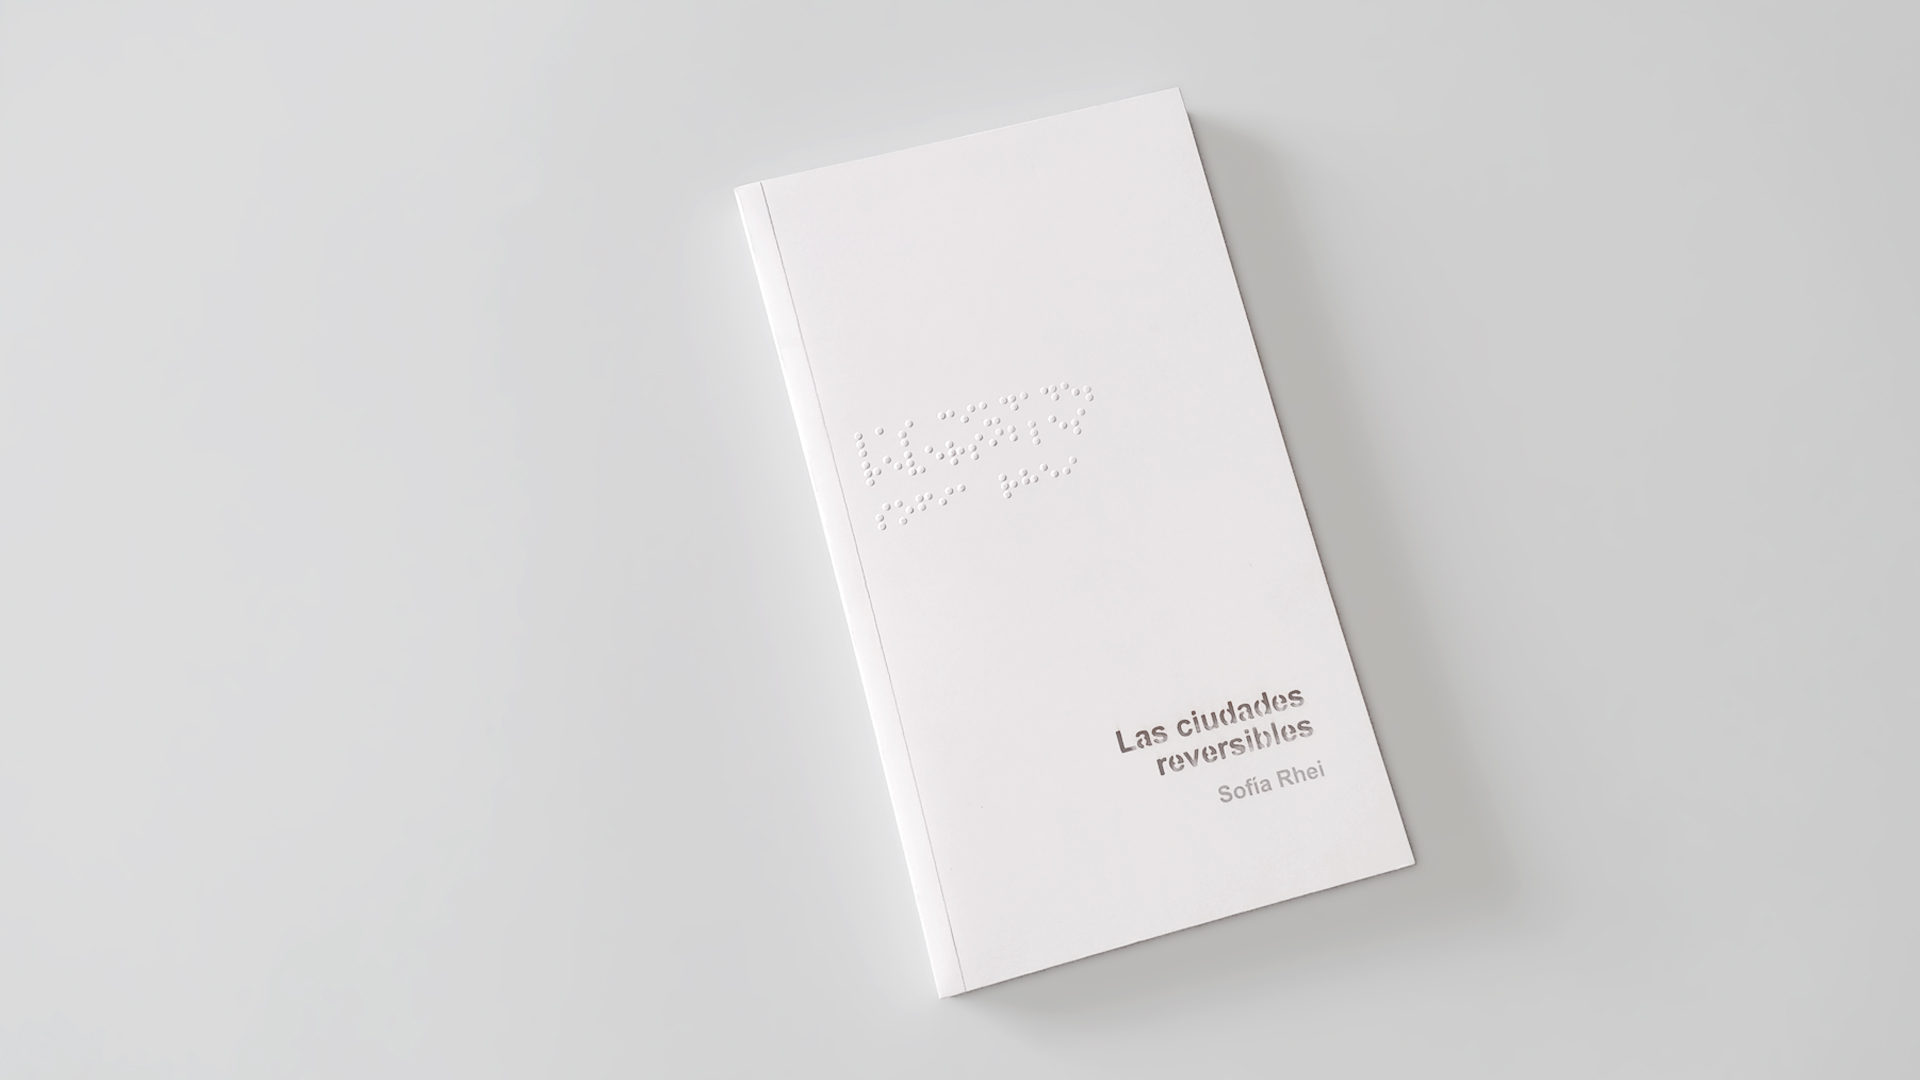 Diseño editorial del libro Las ciudades reversibles de Sofía Rhei